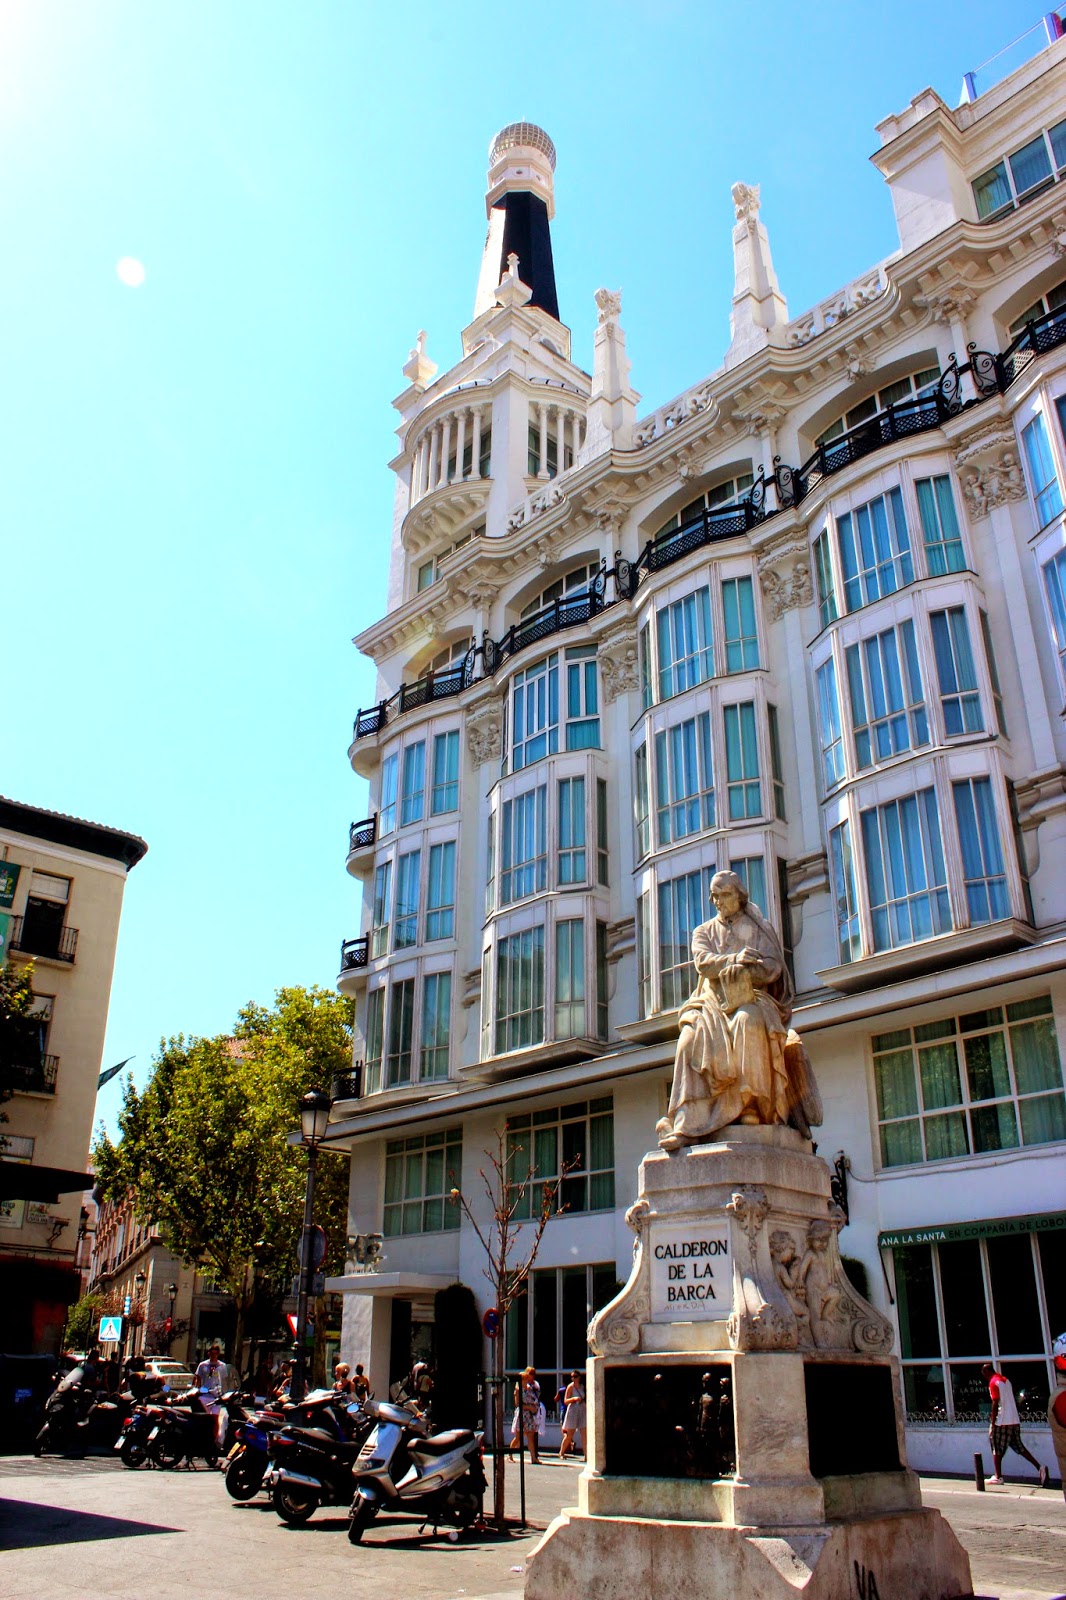 Escultura de Calderón de la Barca. Plaza de Santa Ana-Madrid